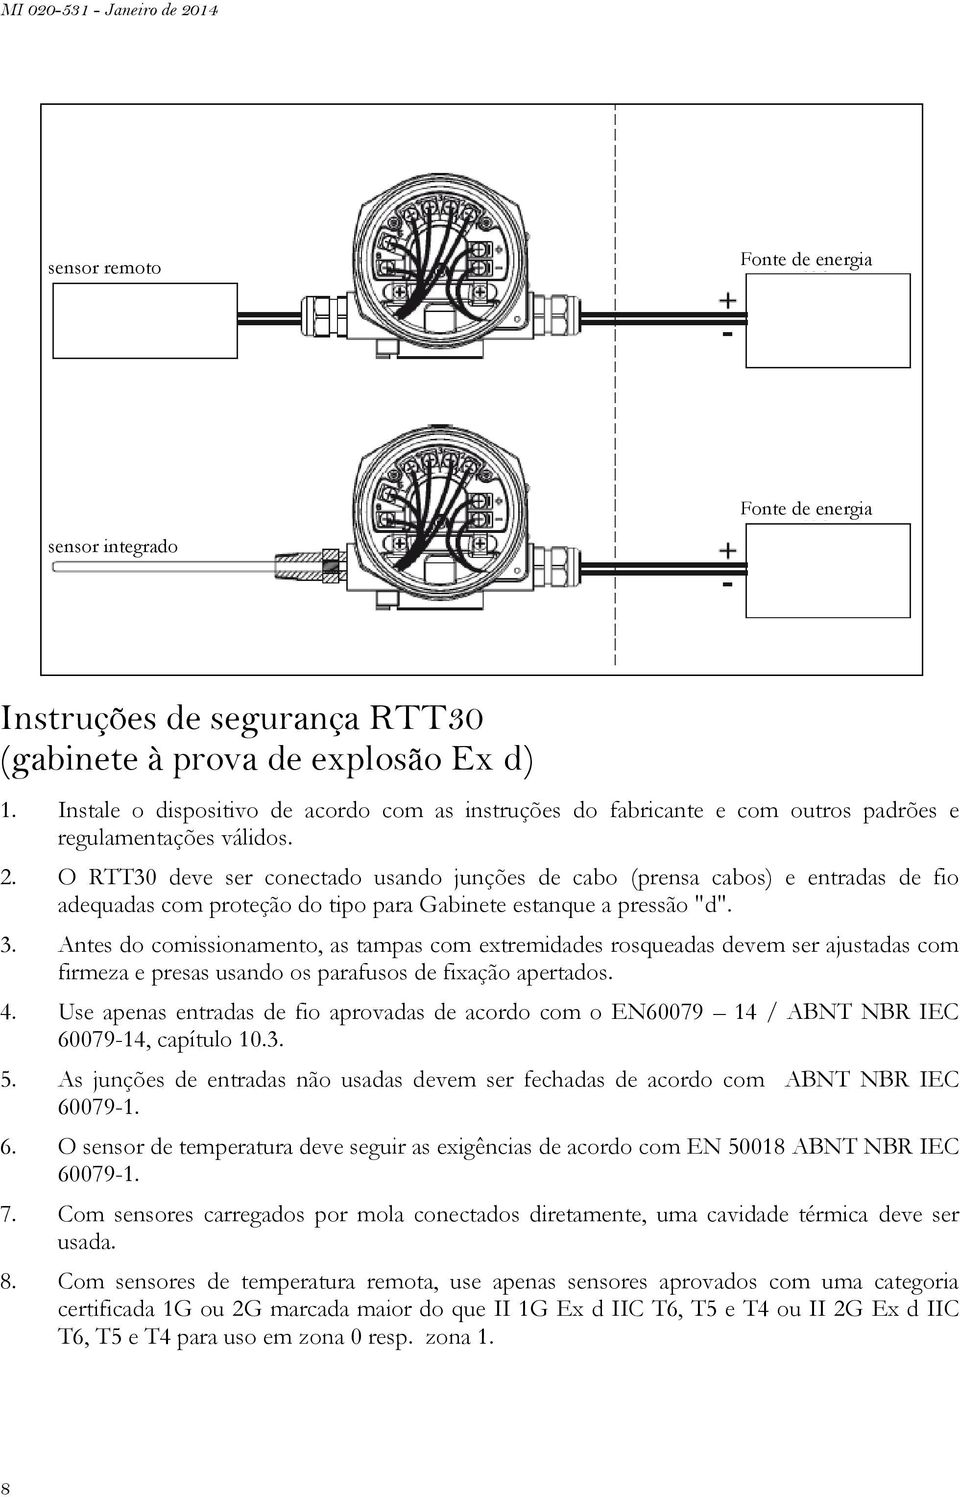 O RTT30 deve ser conectado usando junções de cabo (prensa cabos) e entradas de fio adequadas com proteção do tipo para Gabinete estanque a pressão "d". 3.